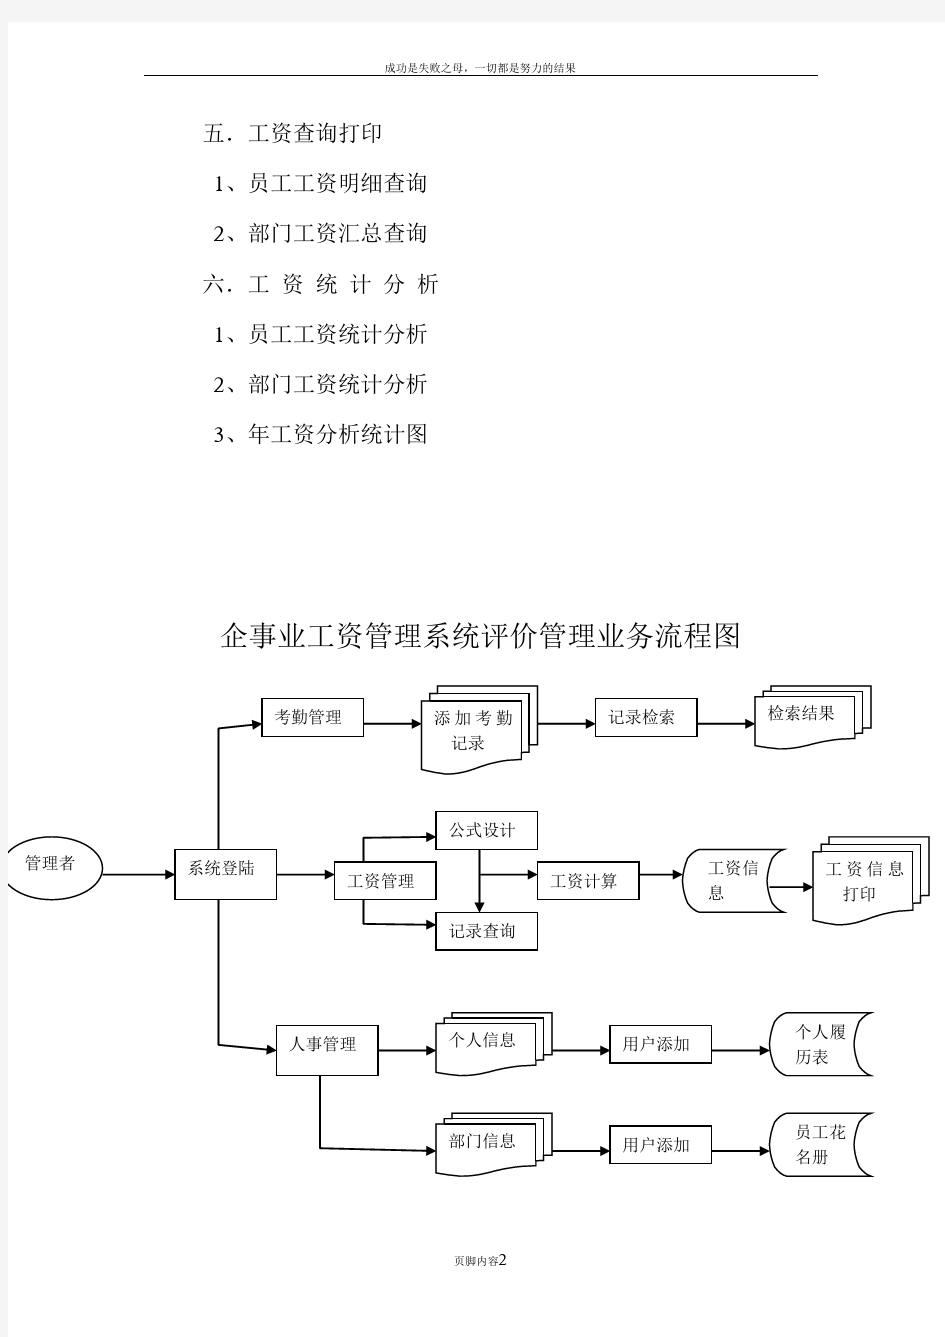 企事业工资管理系统业务流程图(方)